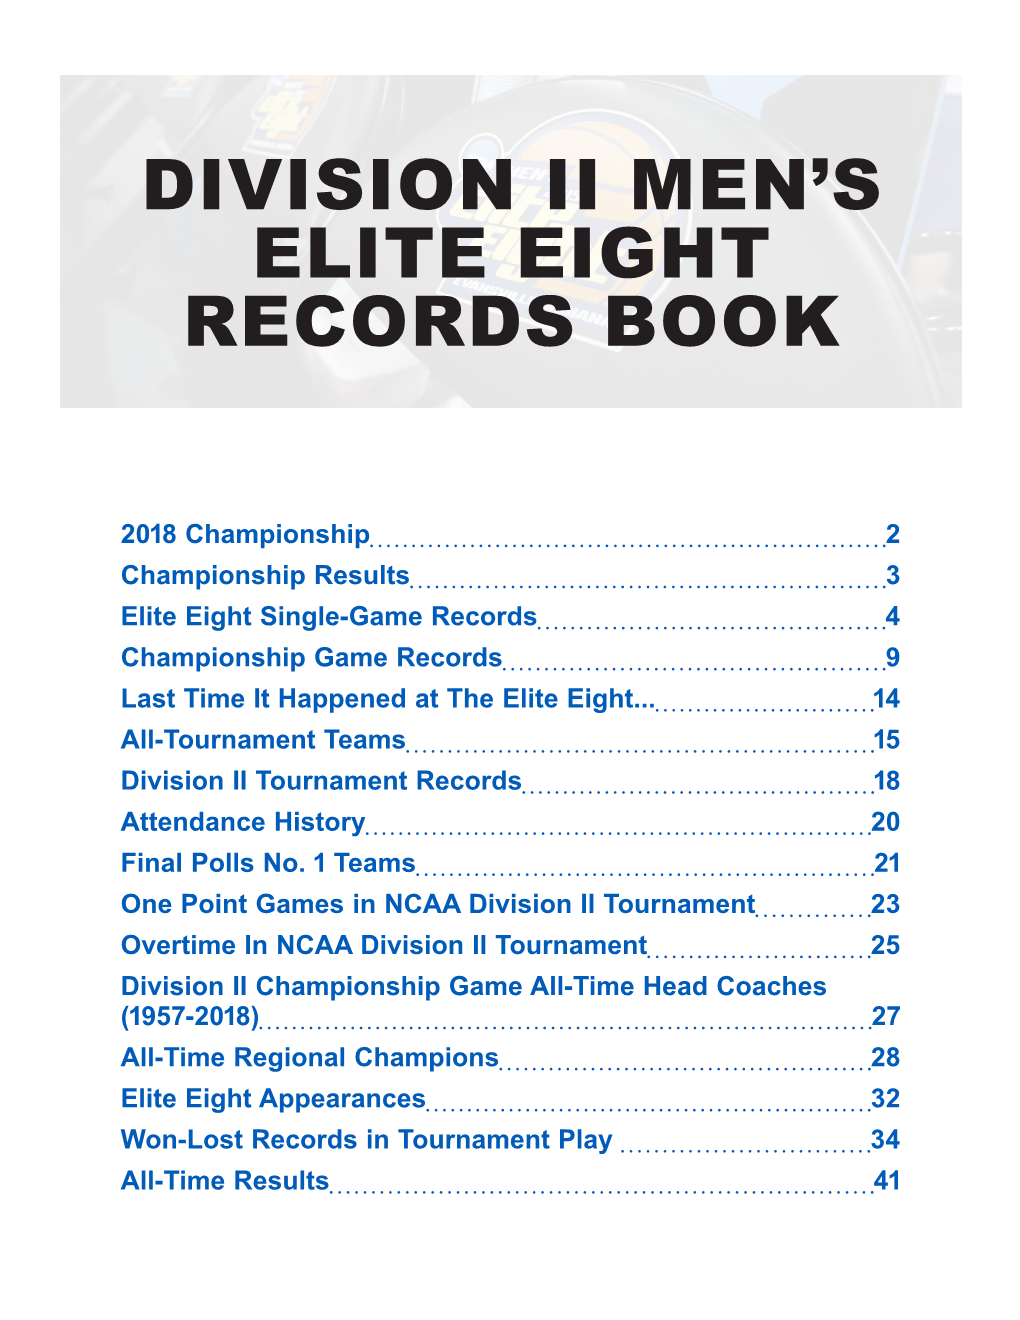 Division Ii Men's Elite Eight Records Book